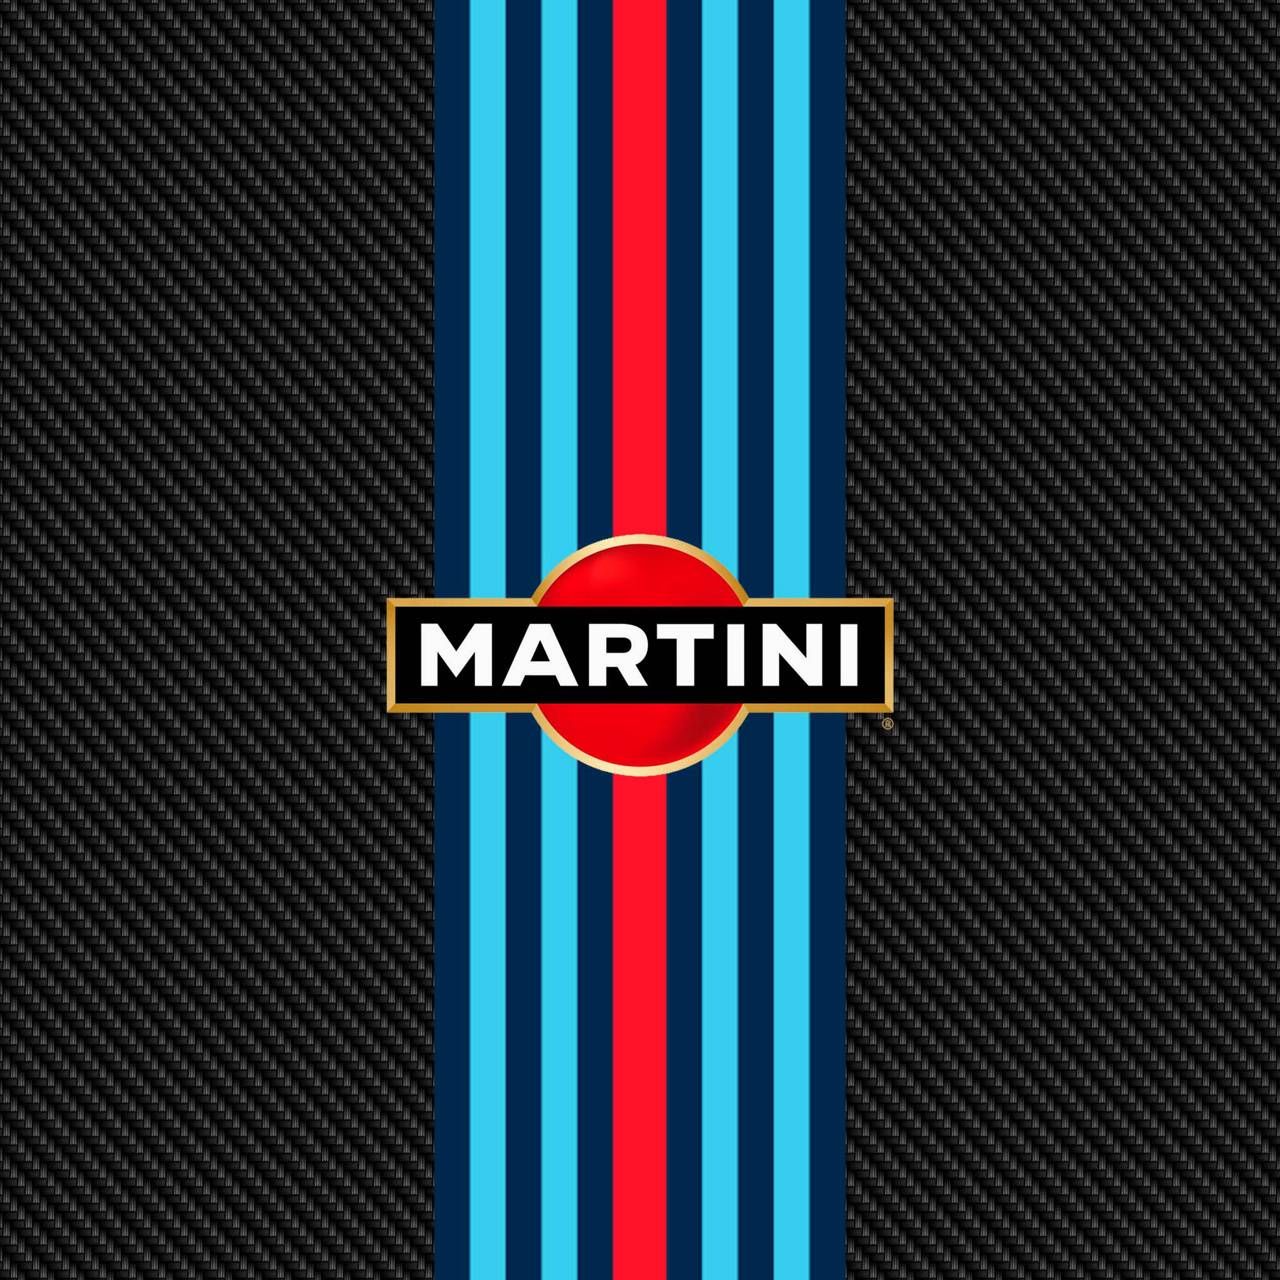 Italdesign Brivido Martini Racing Wallpapers